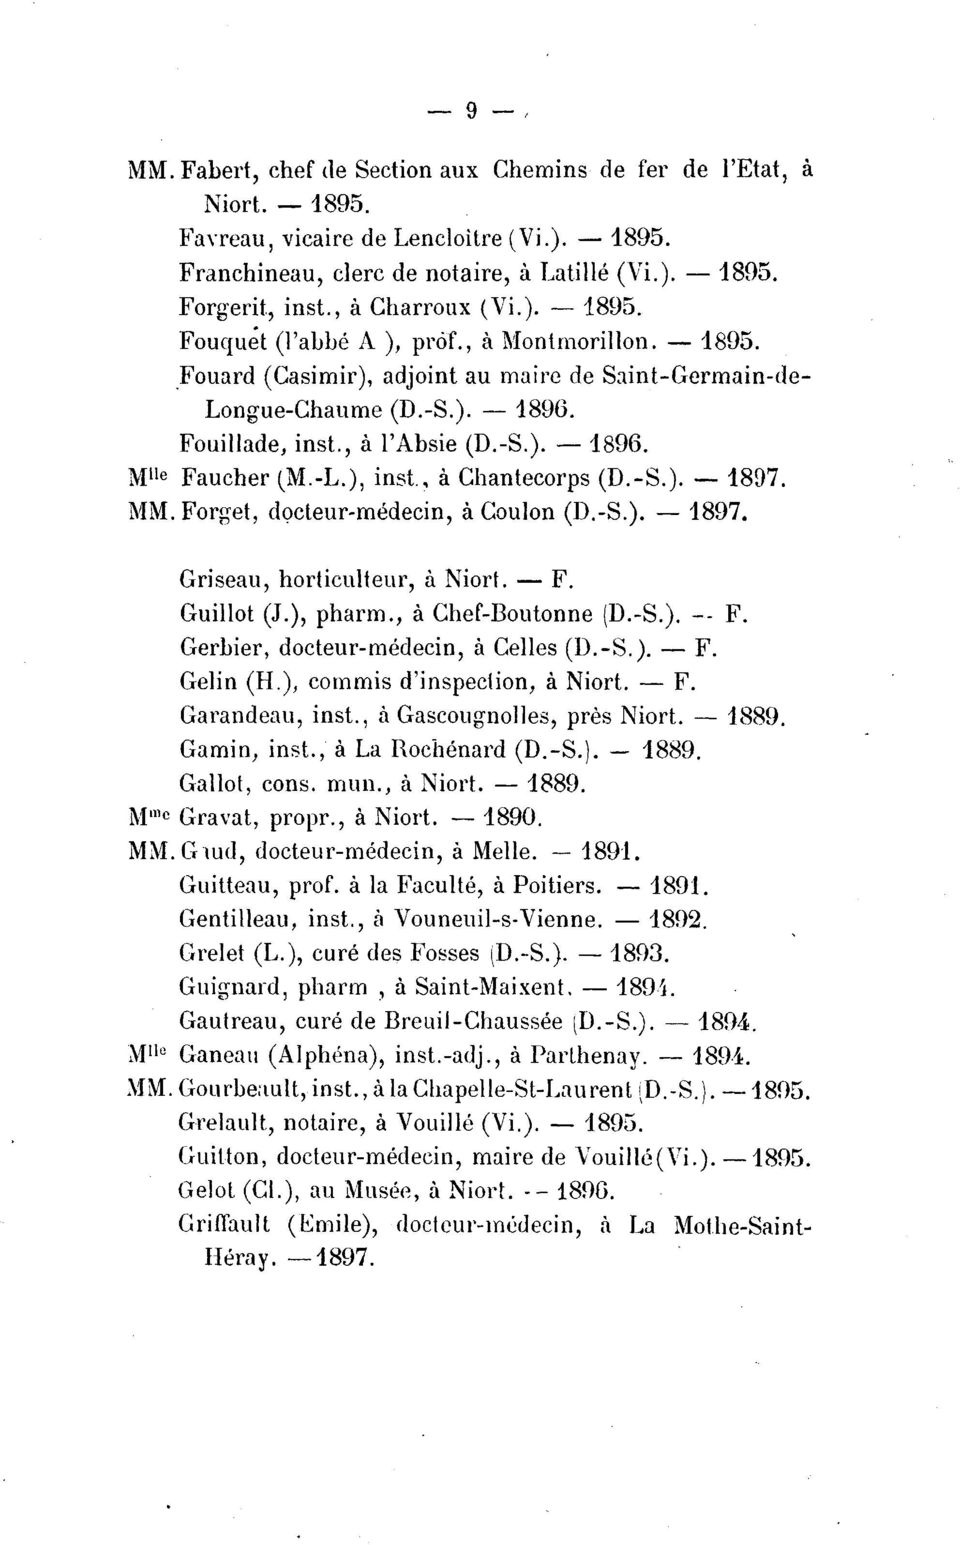 -L.), inst., a Chantecorps (D.-S.).- 1897. MM. Forget, docteur-medecin, a Coulon (D.-S.). - 1897. Griseau, horticulteur, a Niort. - F. Guillot (J.), pharm., a Chef-Boutonne (D.-S.). -- F.